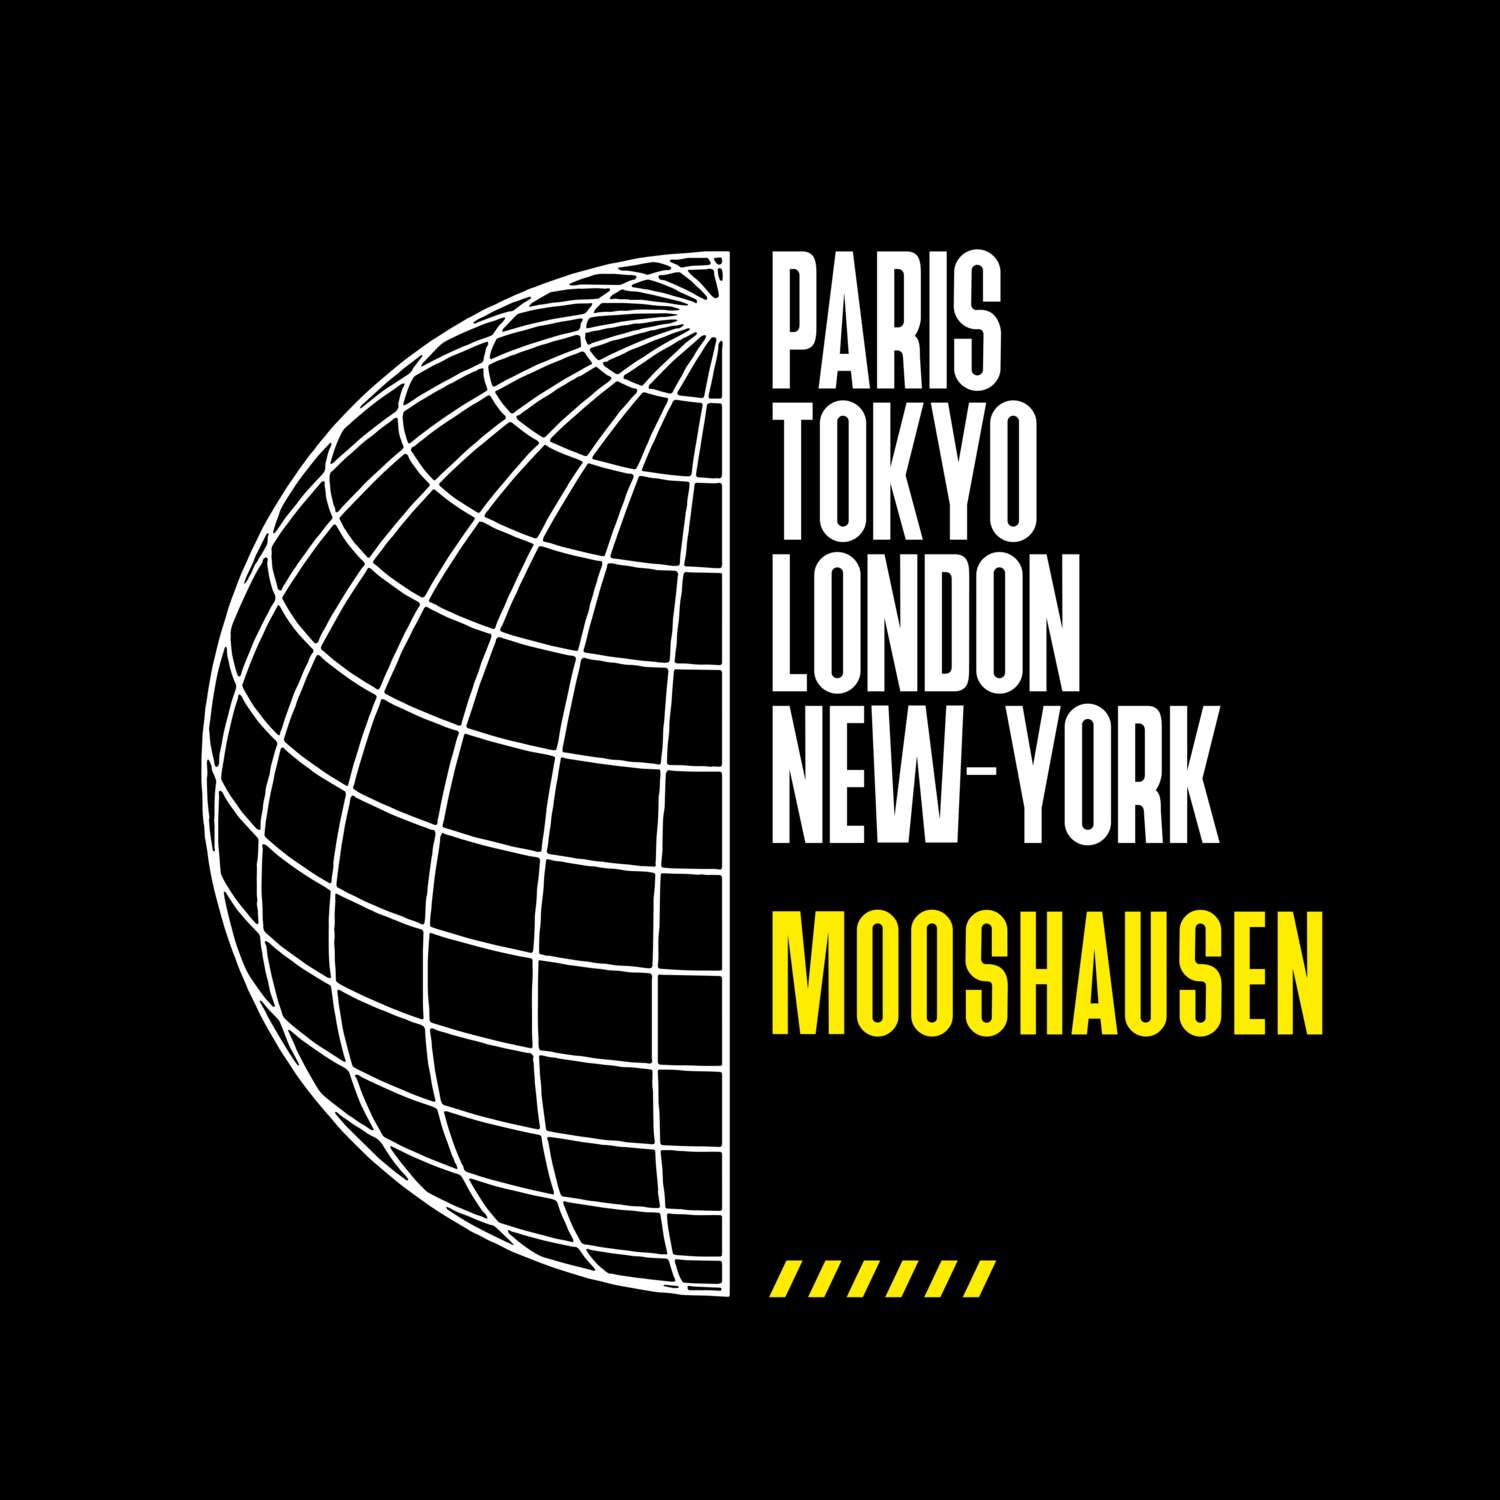 Mooshausen T-Shirt »Paris Tokyo London«